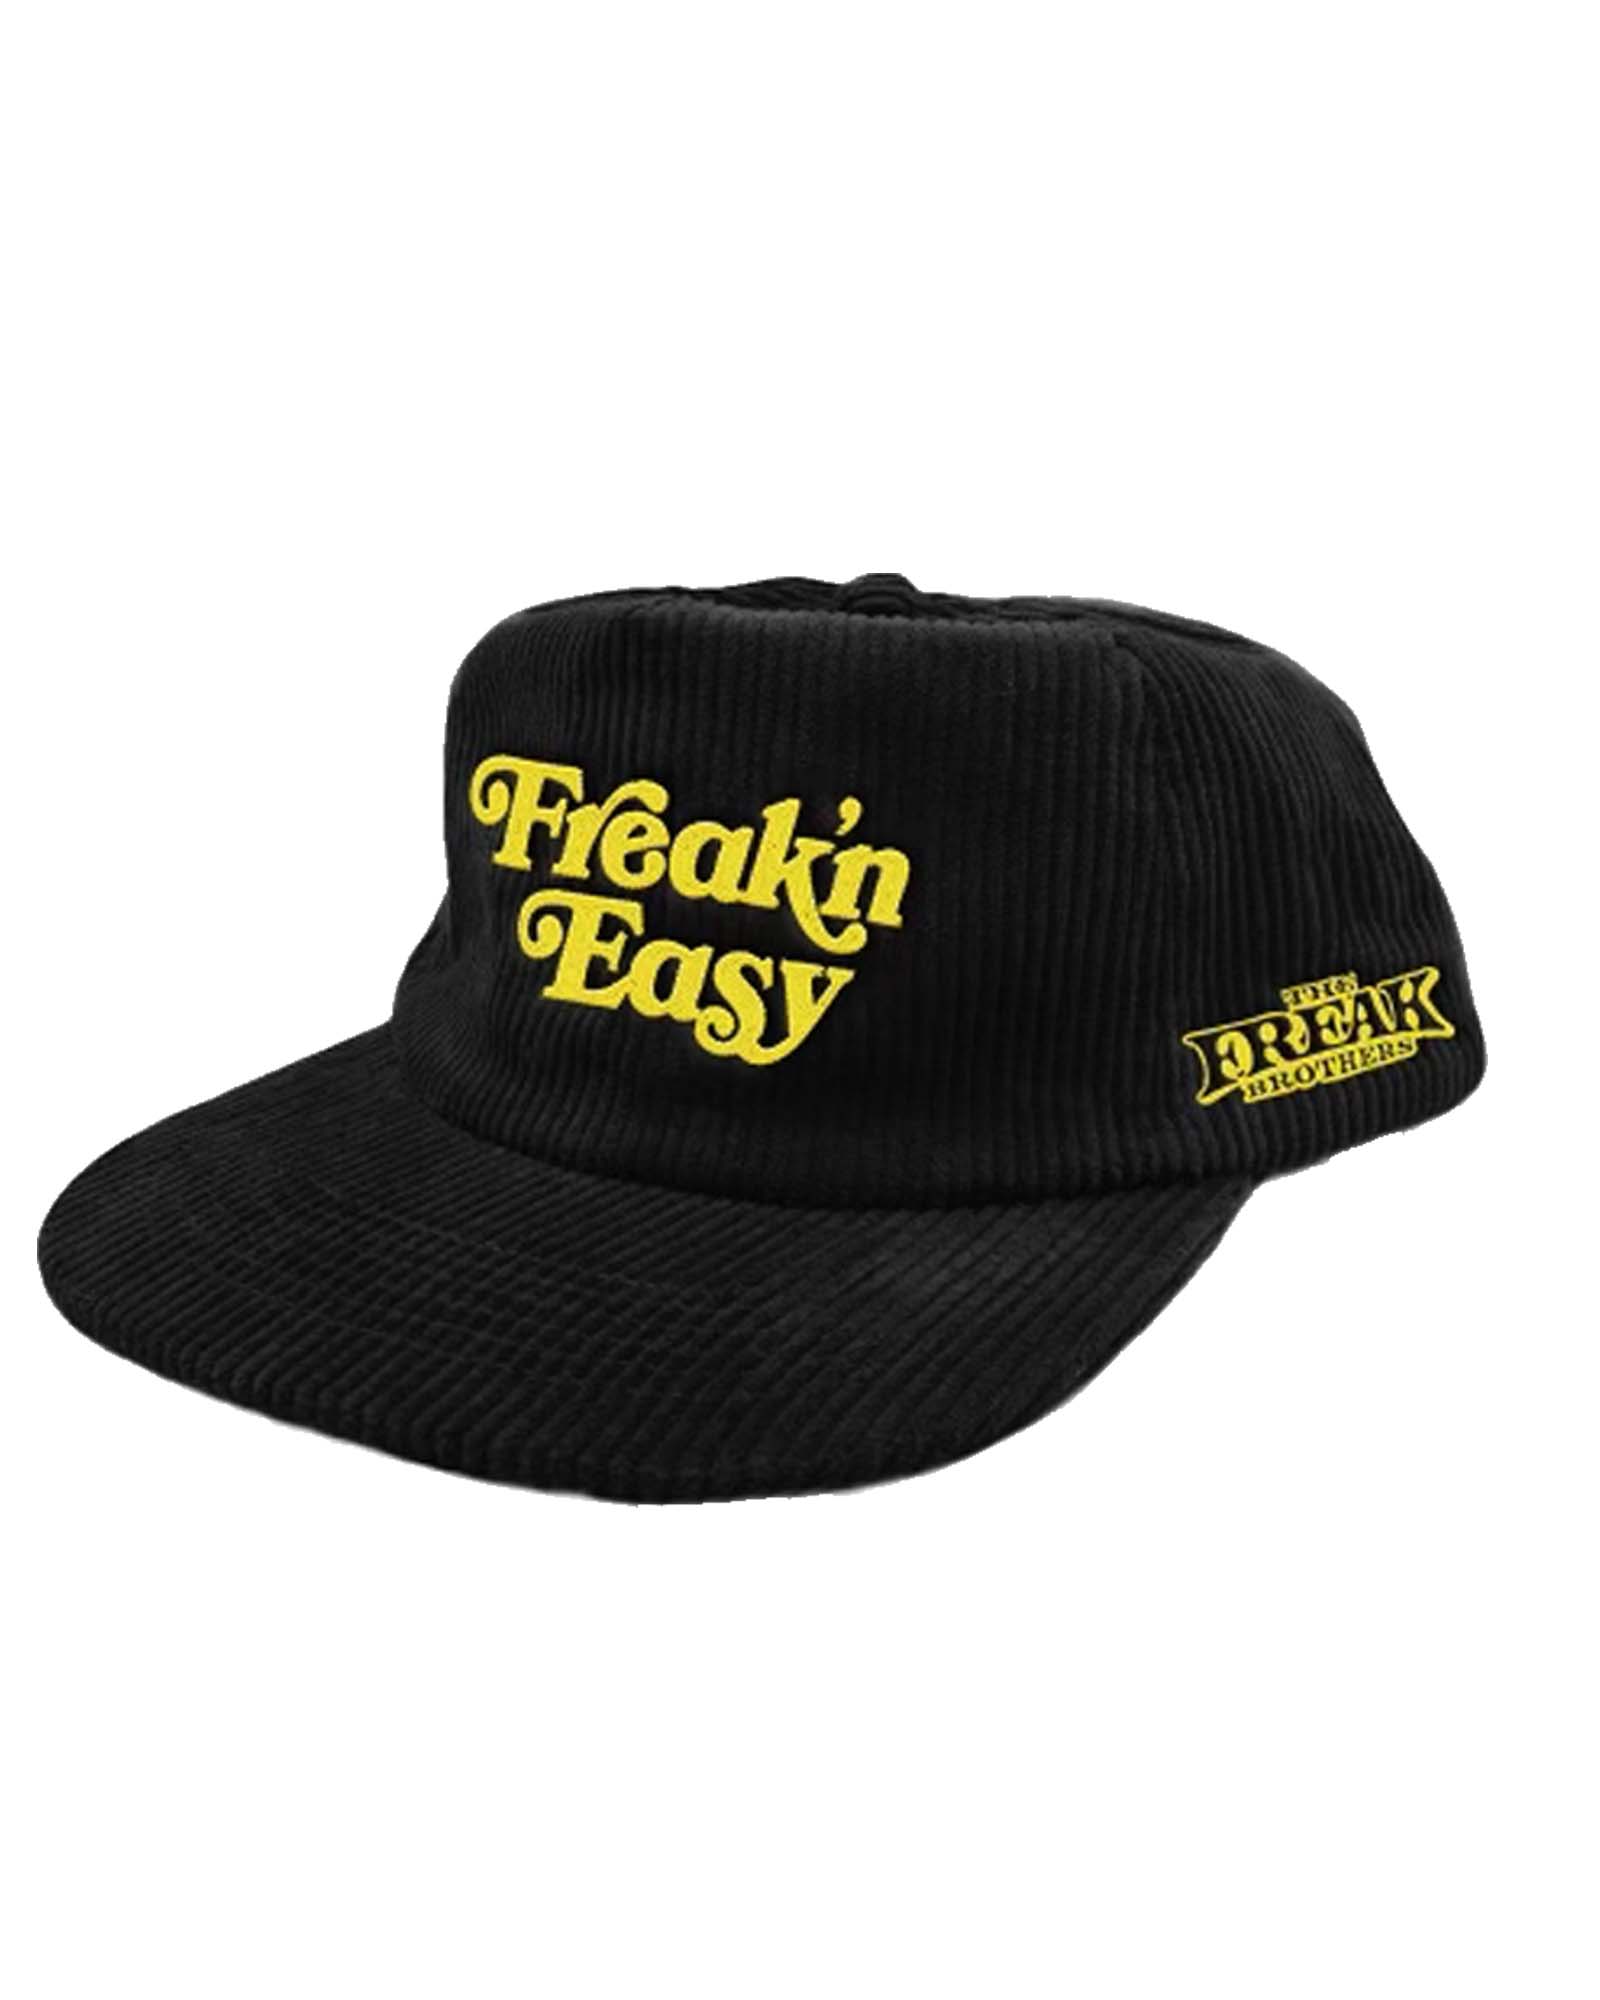 Freak\'n Easy Snapback Hat – The Freak Brothers